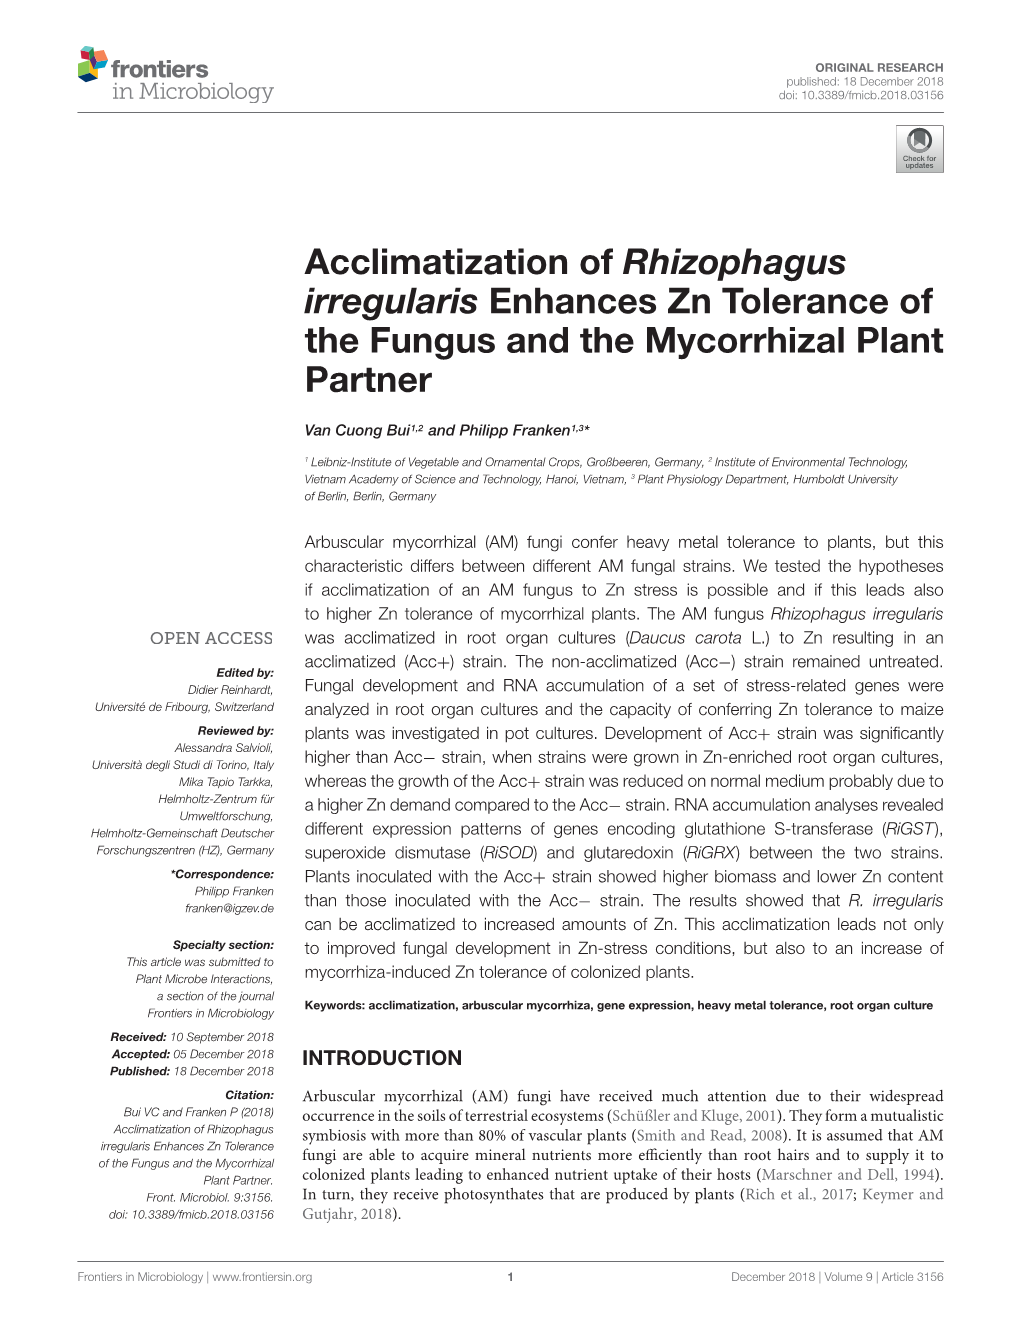 Acclimatization of Rhizophagus Irregularis Enhances Zn Tolerance of the Fungus and the Mycorrhizal Plant Partner